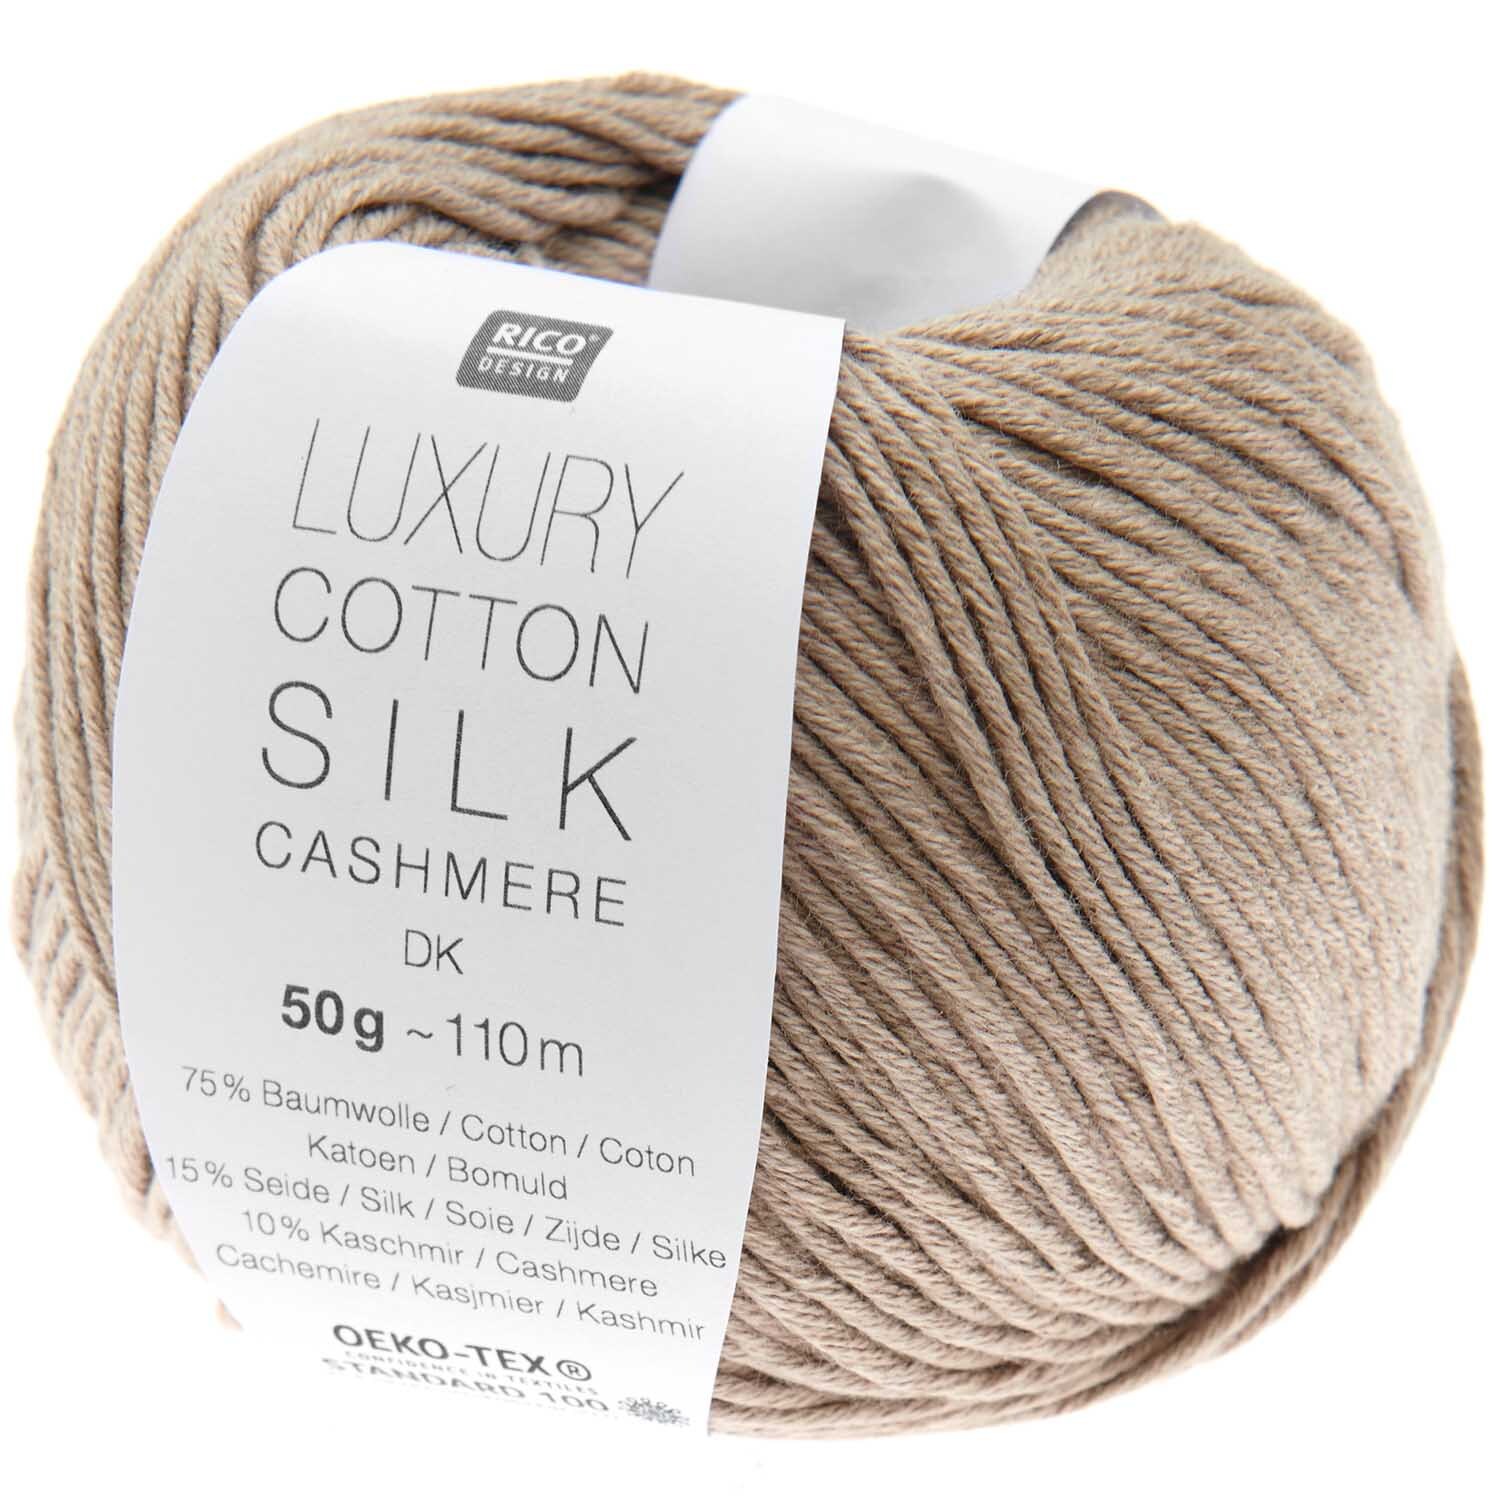 Luxury Cotton Silk Cashmere dk